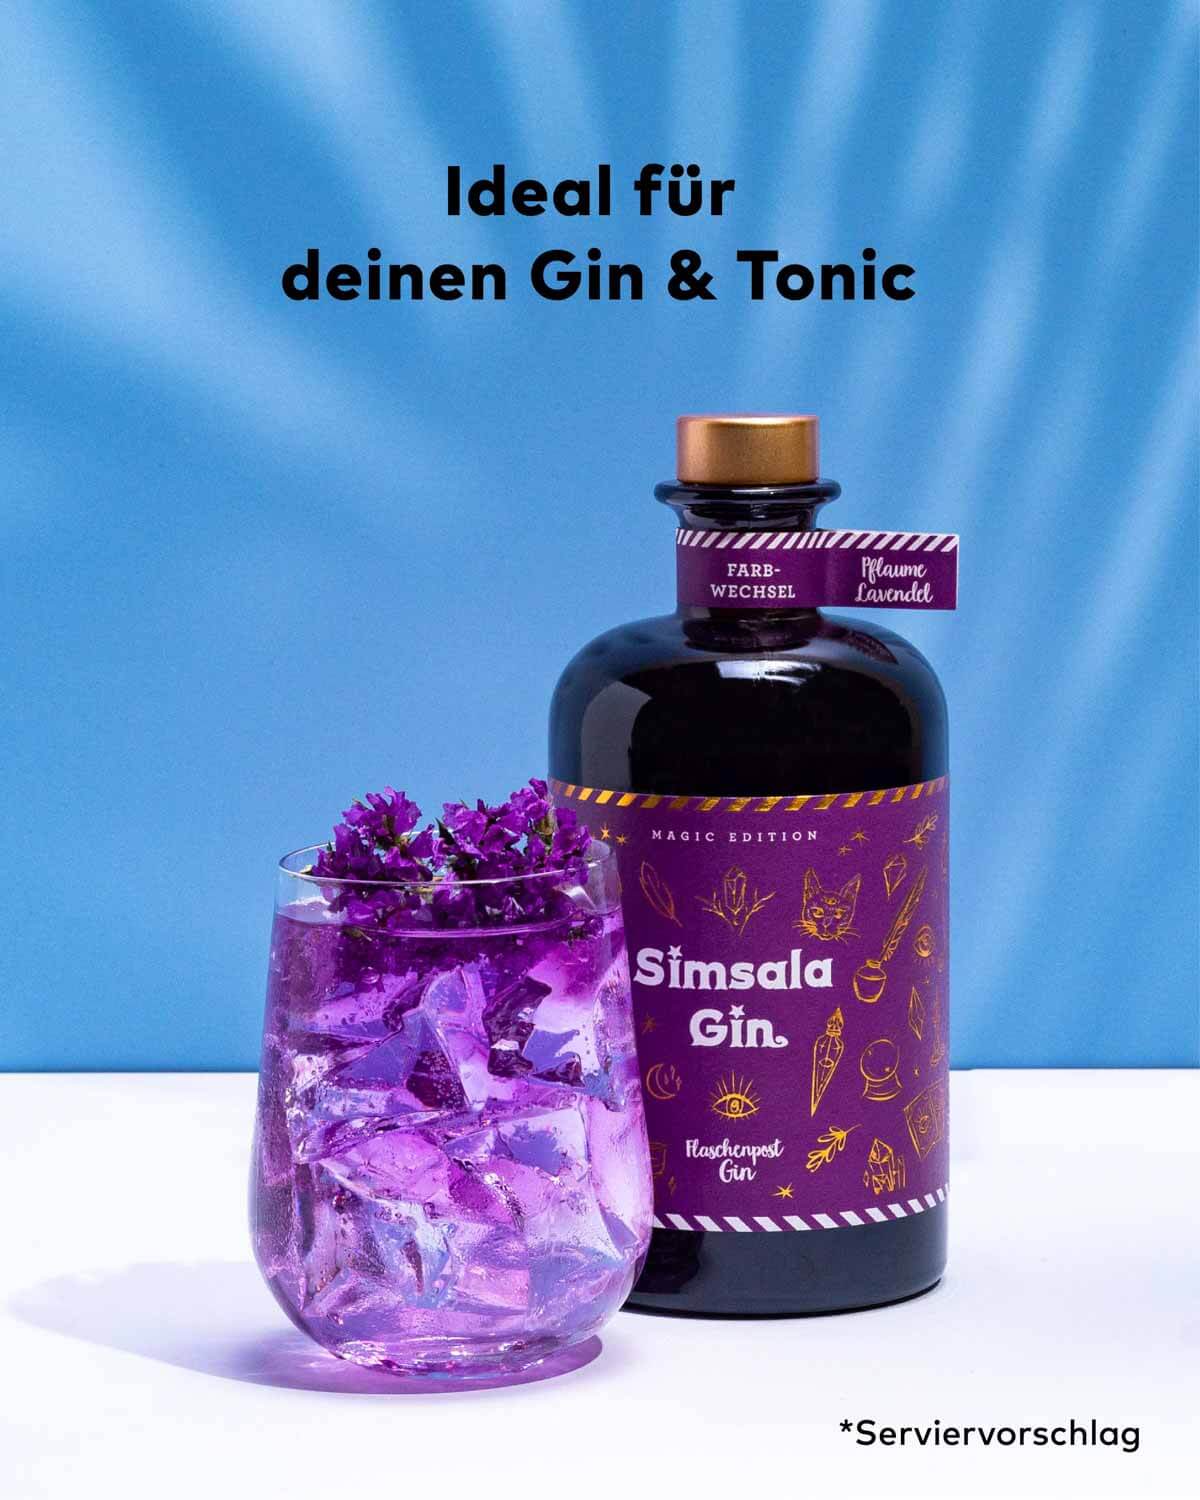 Der Simsala Gin von Flaschenpost Gin mit verspieltem Etikett Design und kleinen Details aus der Welt der Zauberei. Er eignet sich ideal für einen Gin Tonic und macht ihn um Eyecatcher durch seinen Farbwechsel-Effekt. Der Drink wird mit Tonic seine Farbe von blau zu lila ändern. 